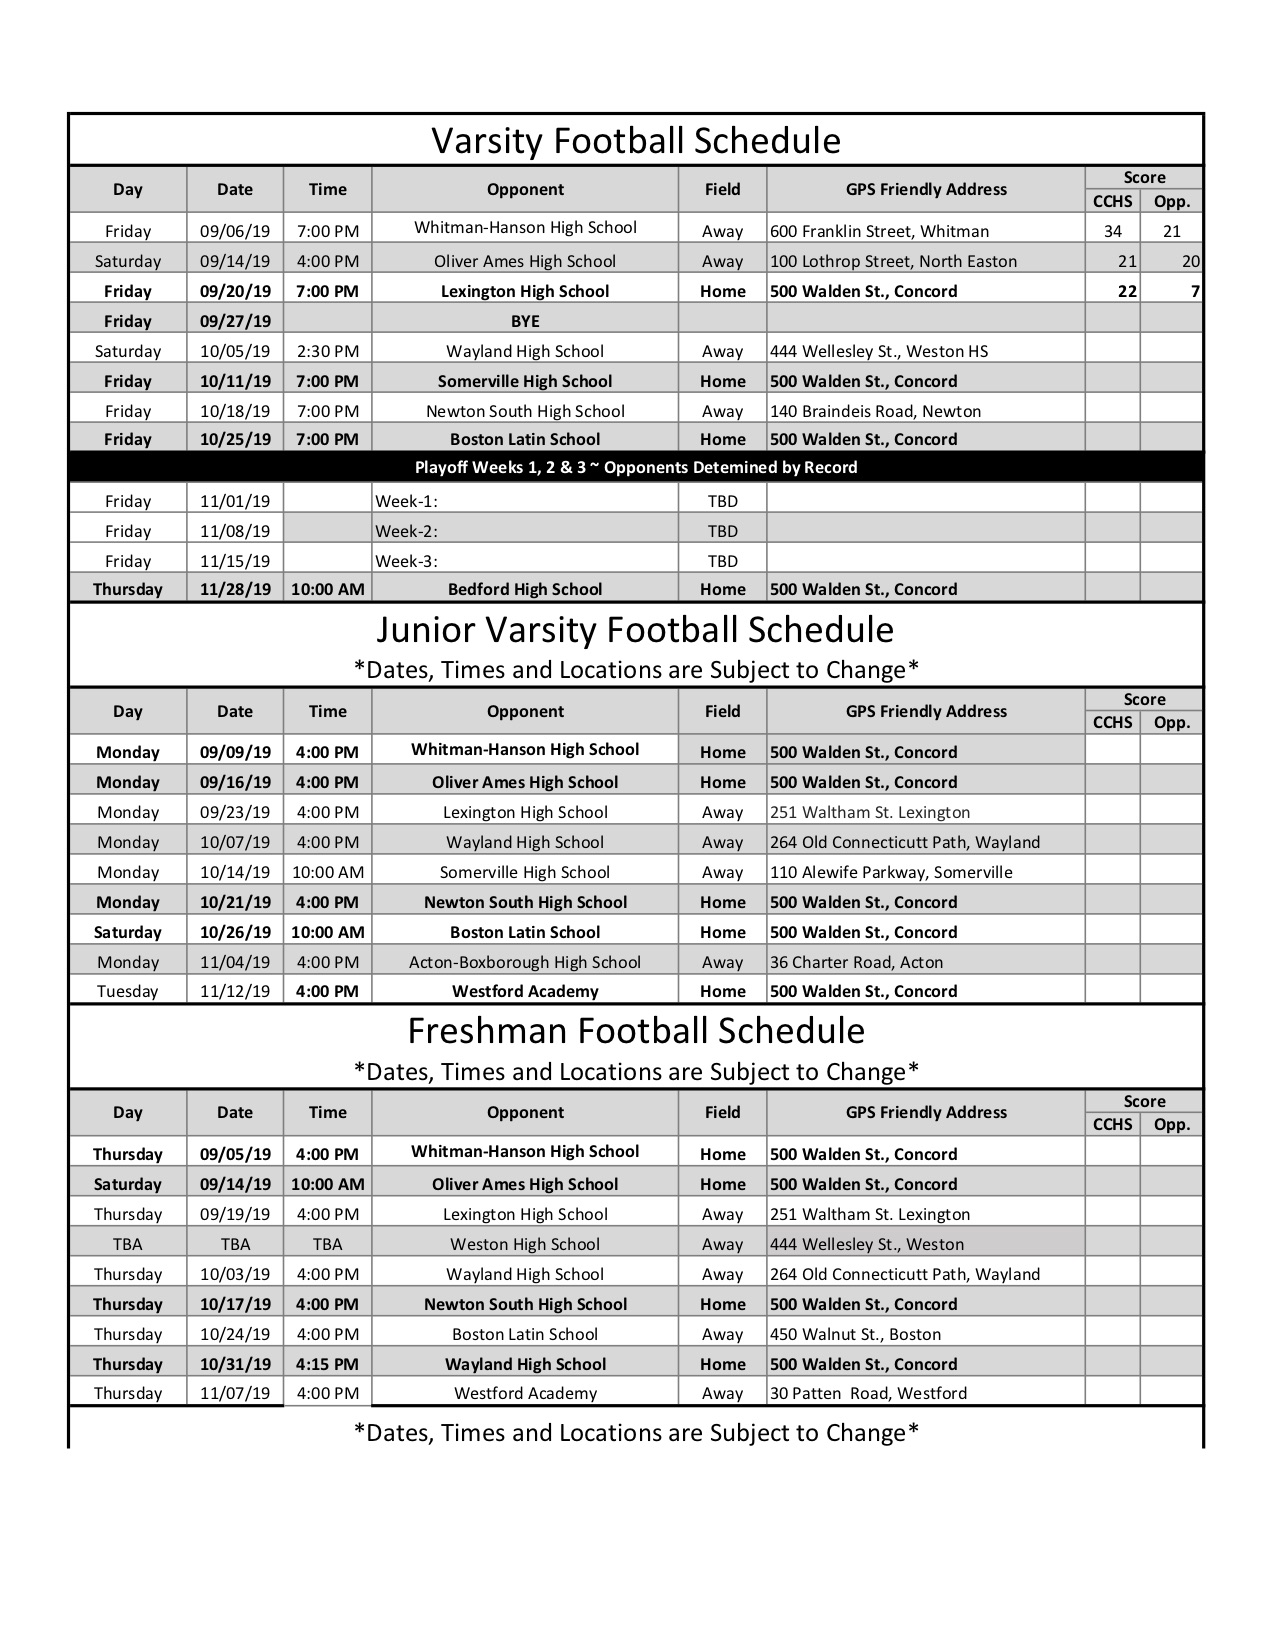 warren township high school football schedule 2019